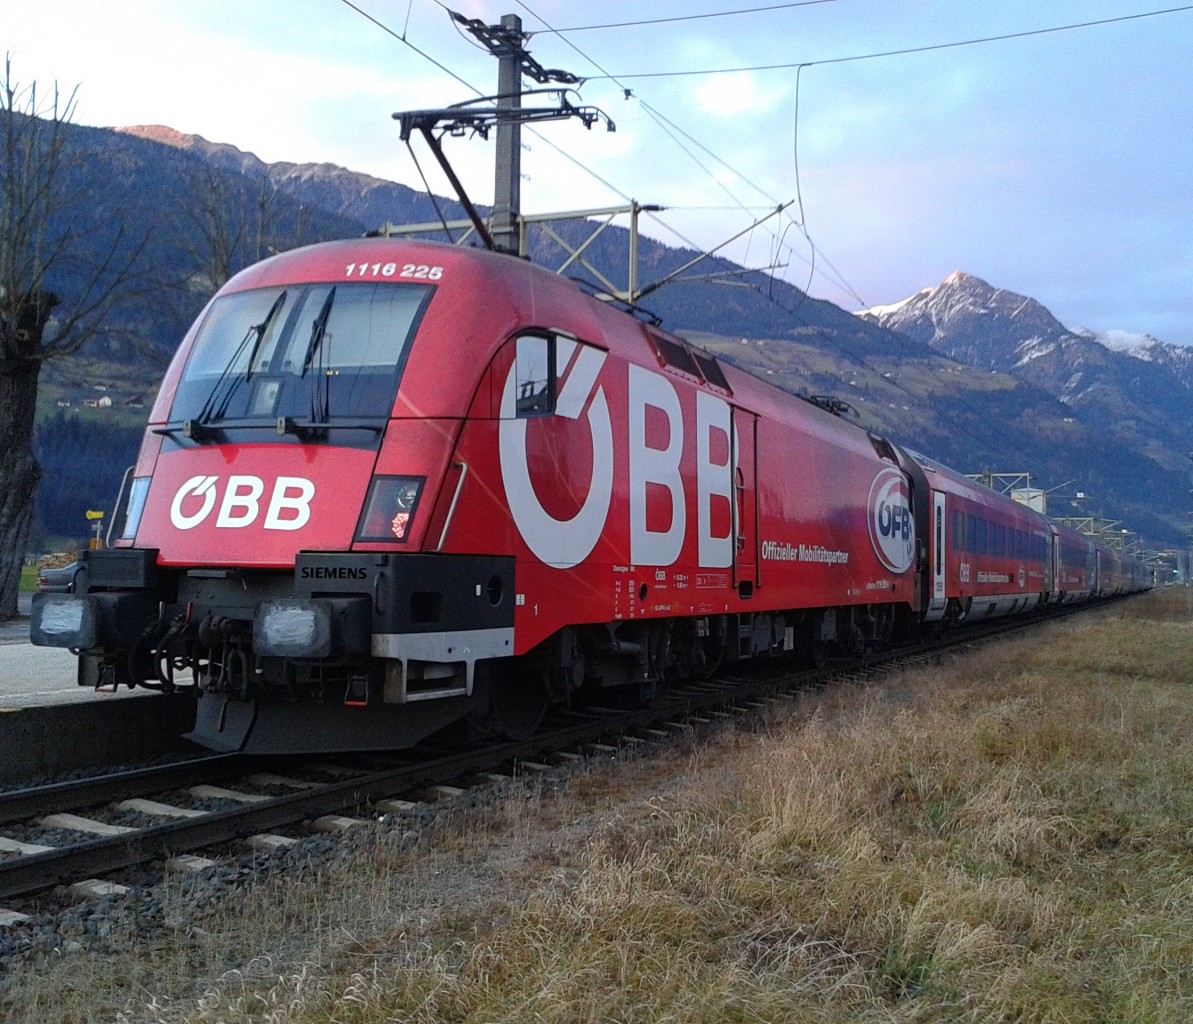 1116 225-4  ÖFB-railjet  am Zugschluss des railjet 632 (Lienz - Wien Hbf) am 27.11.2015 beim Halt in Greifenburg-Weißensee.	
